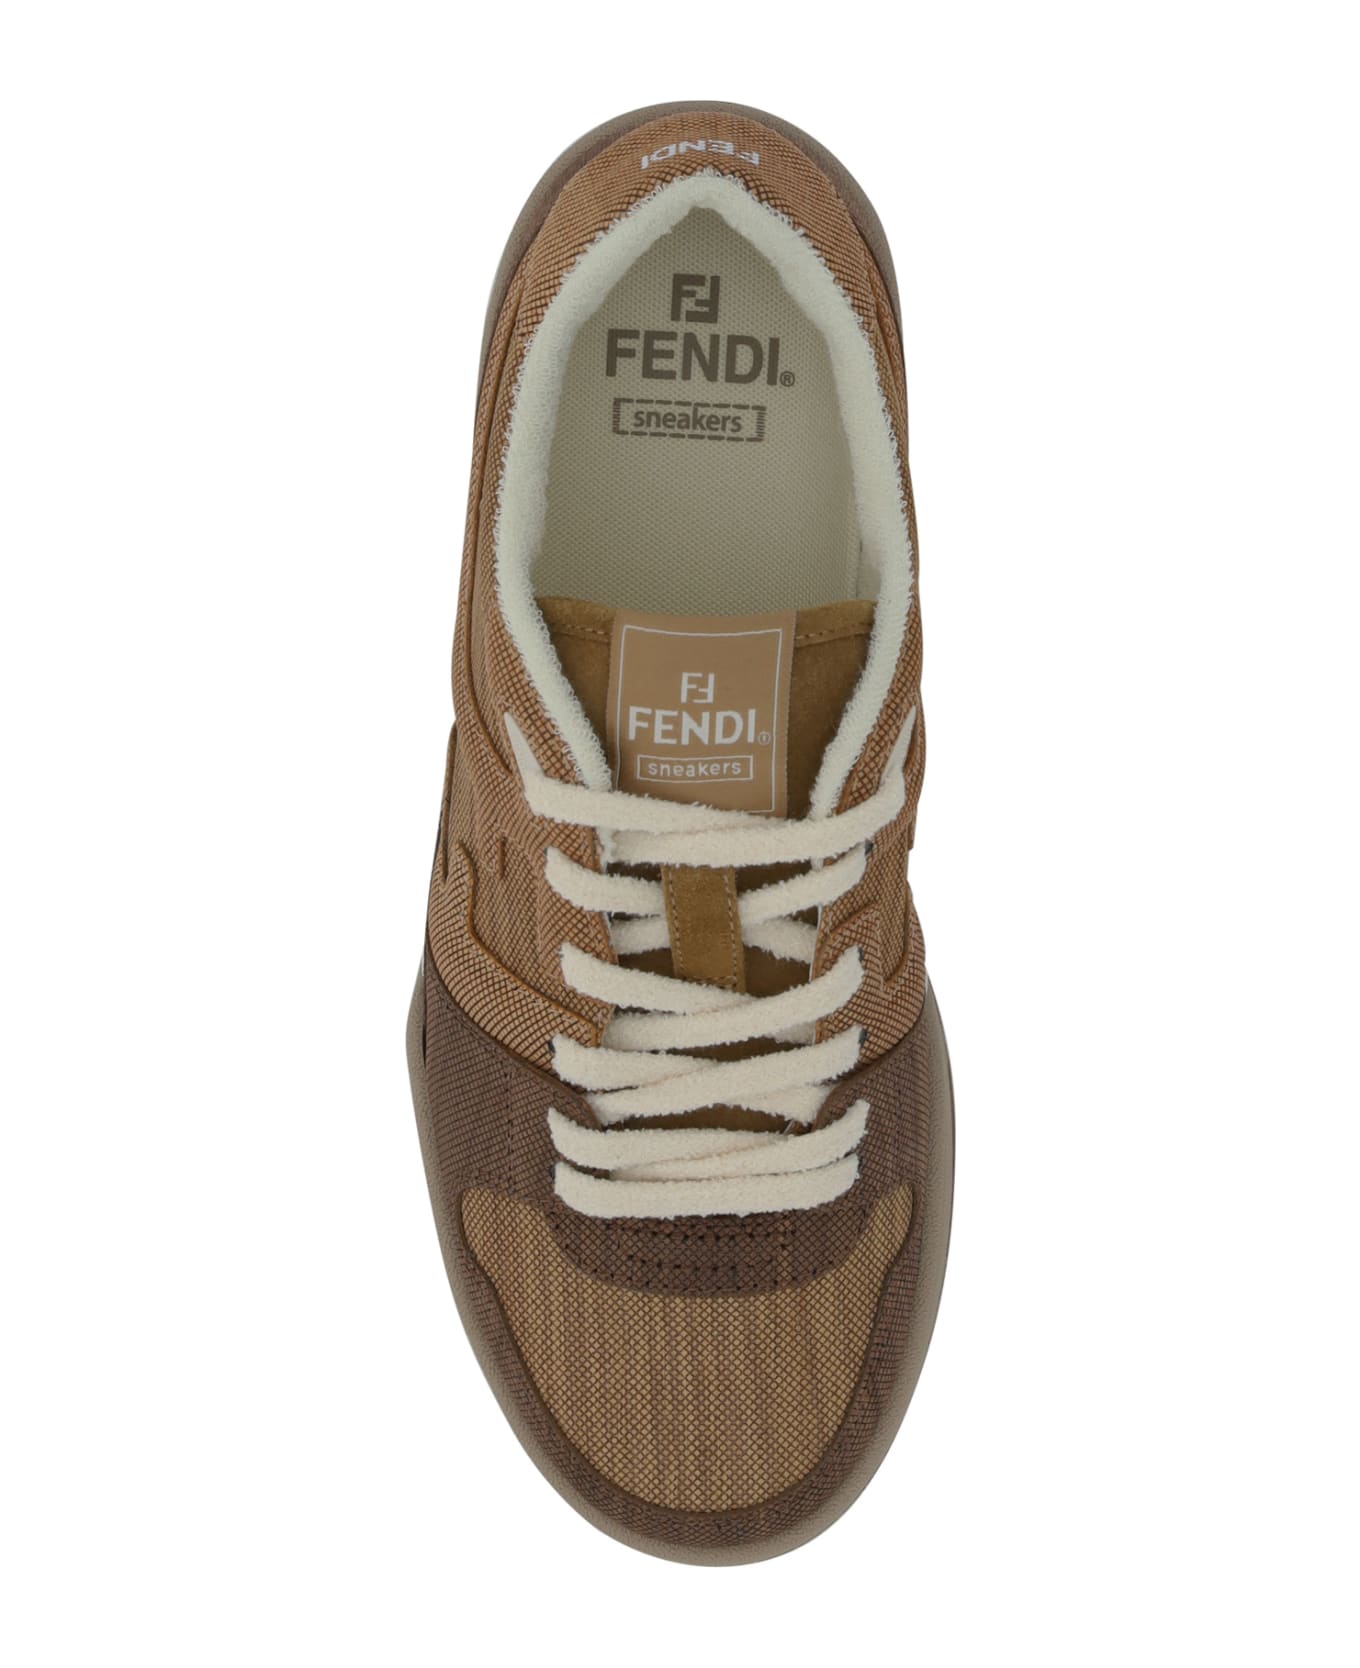 Fendi Match Sneakers - Noce+faggio+quercia